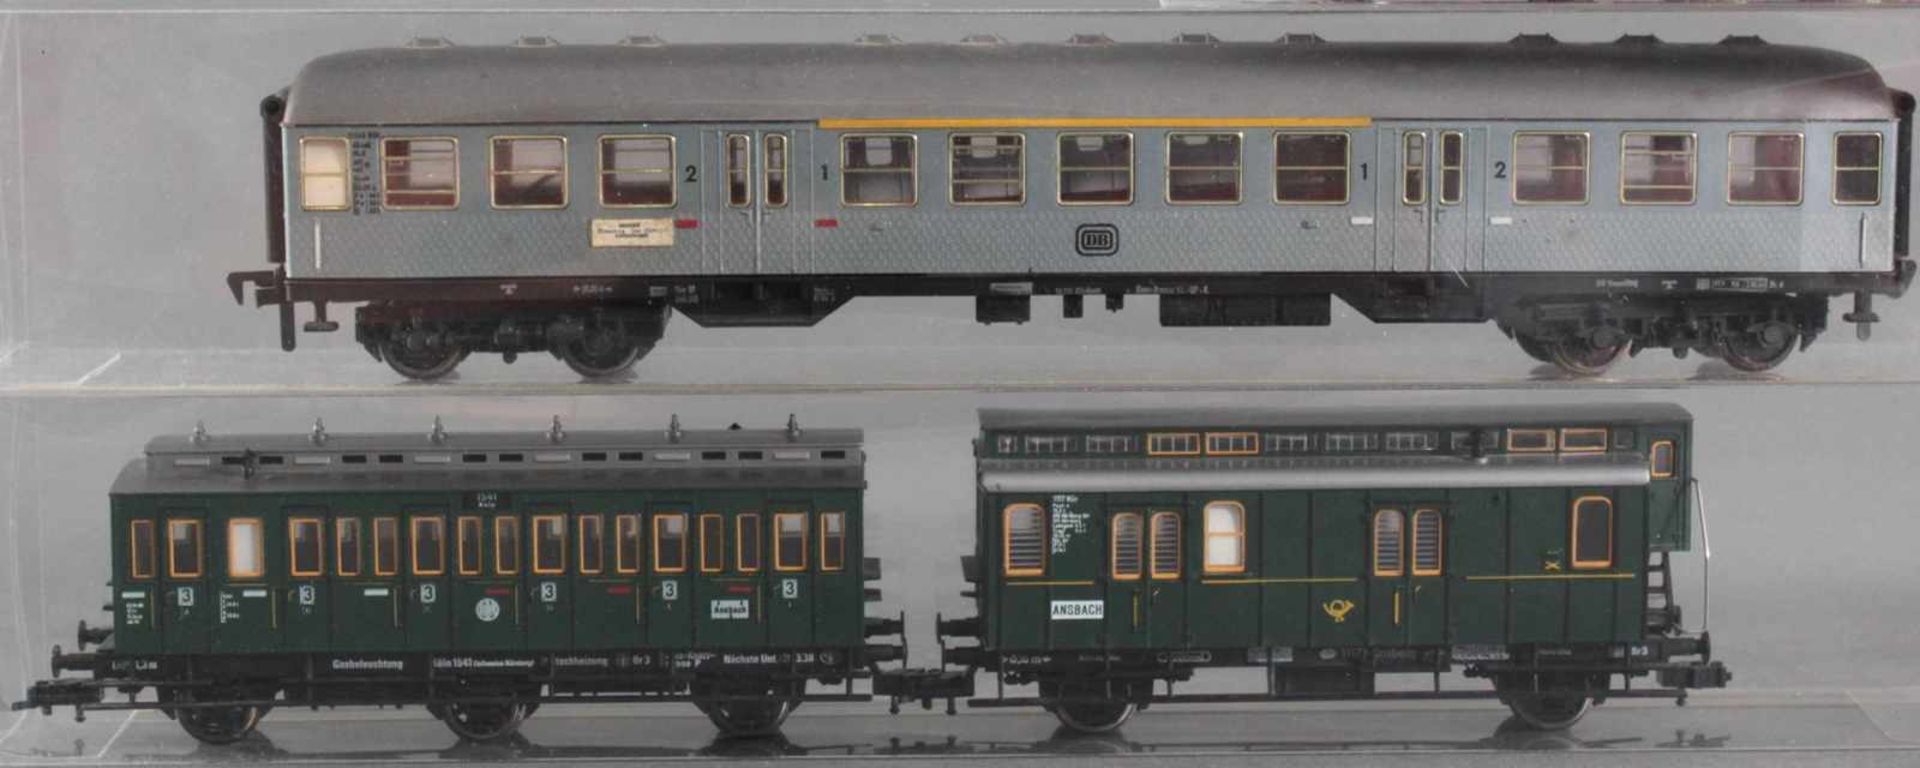 Märklin H0 Dampf-Lok 3308 mit 6 Fleischmann Waggons2 Güterwaggons, 1 Schlafwagen, 1 Personenwaggon - Image 2 of 4